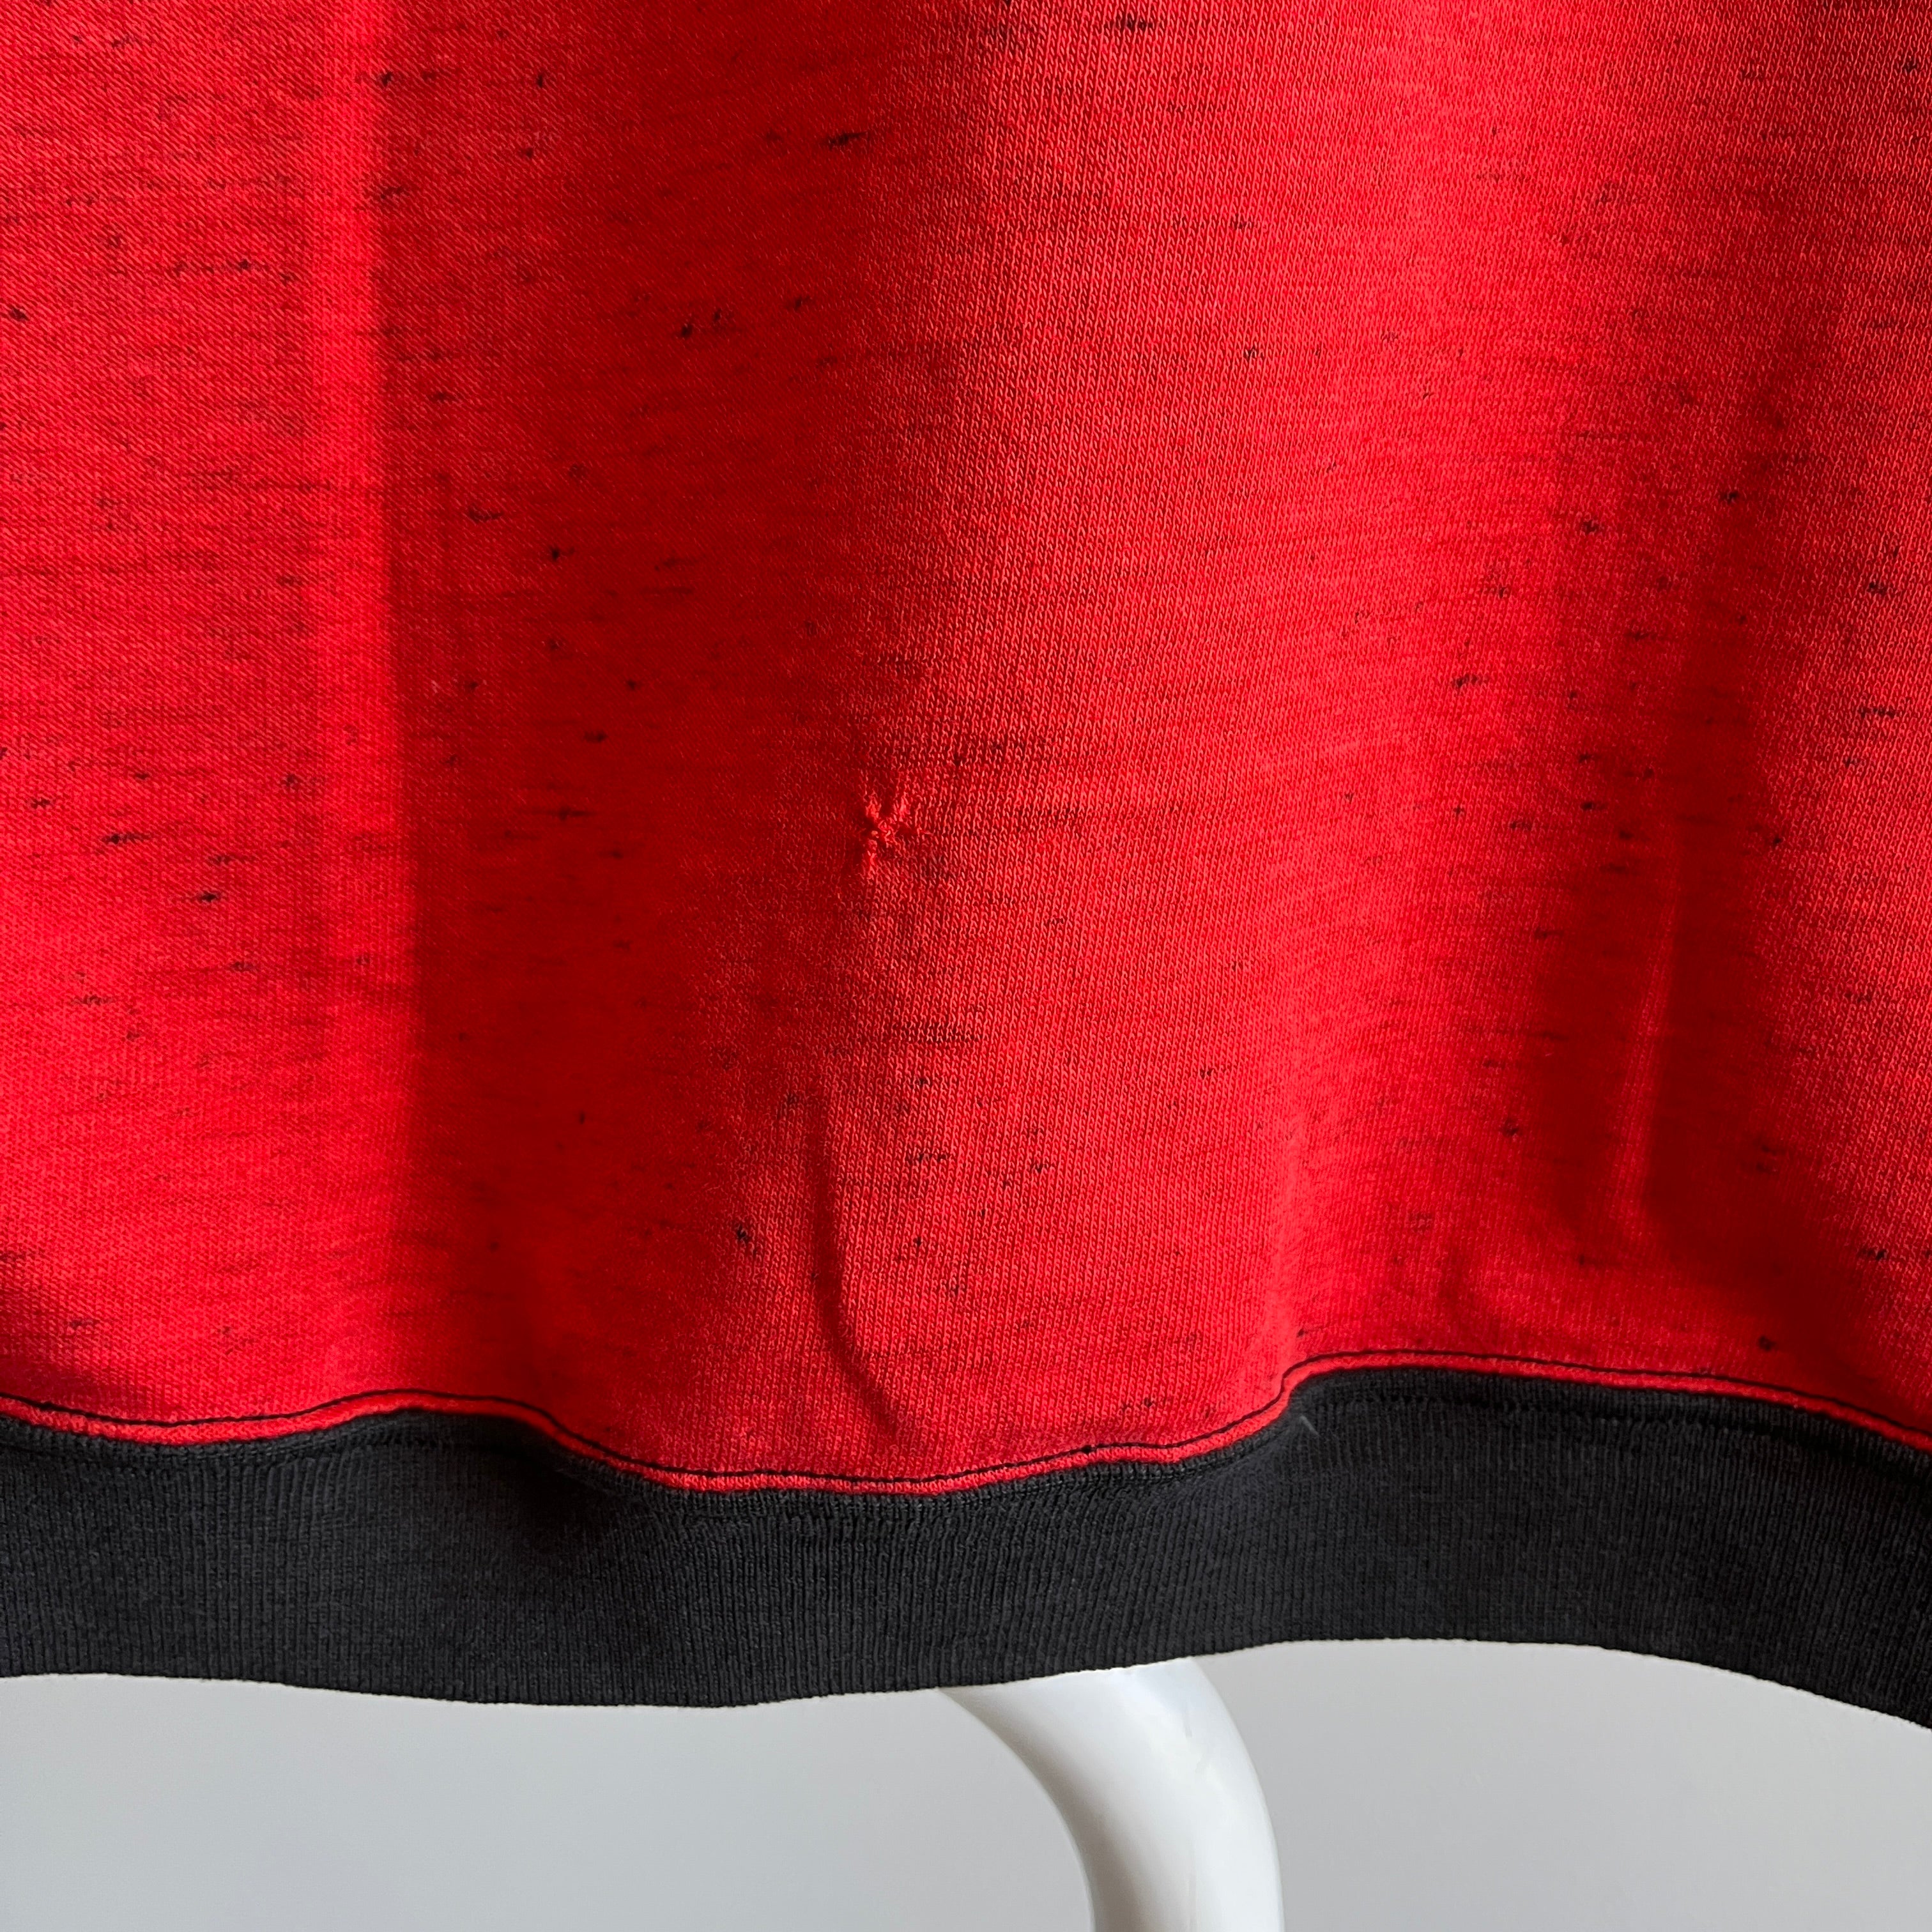 Sweat-shirt rouge chiné GG avec bordure contrastée marron/noir